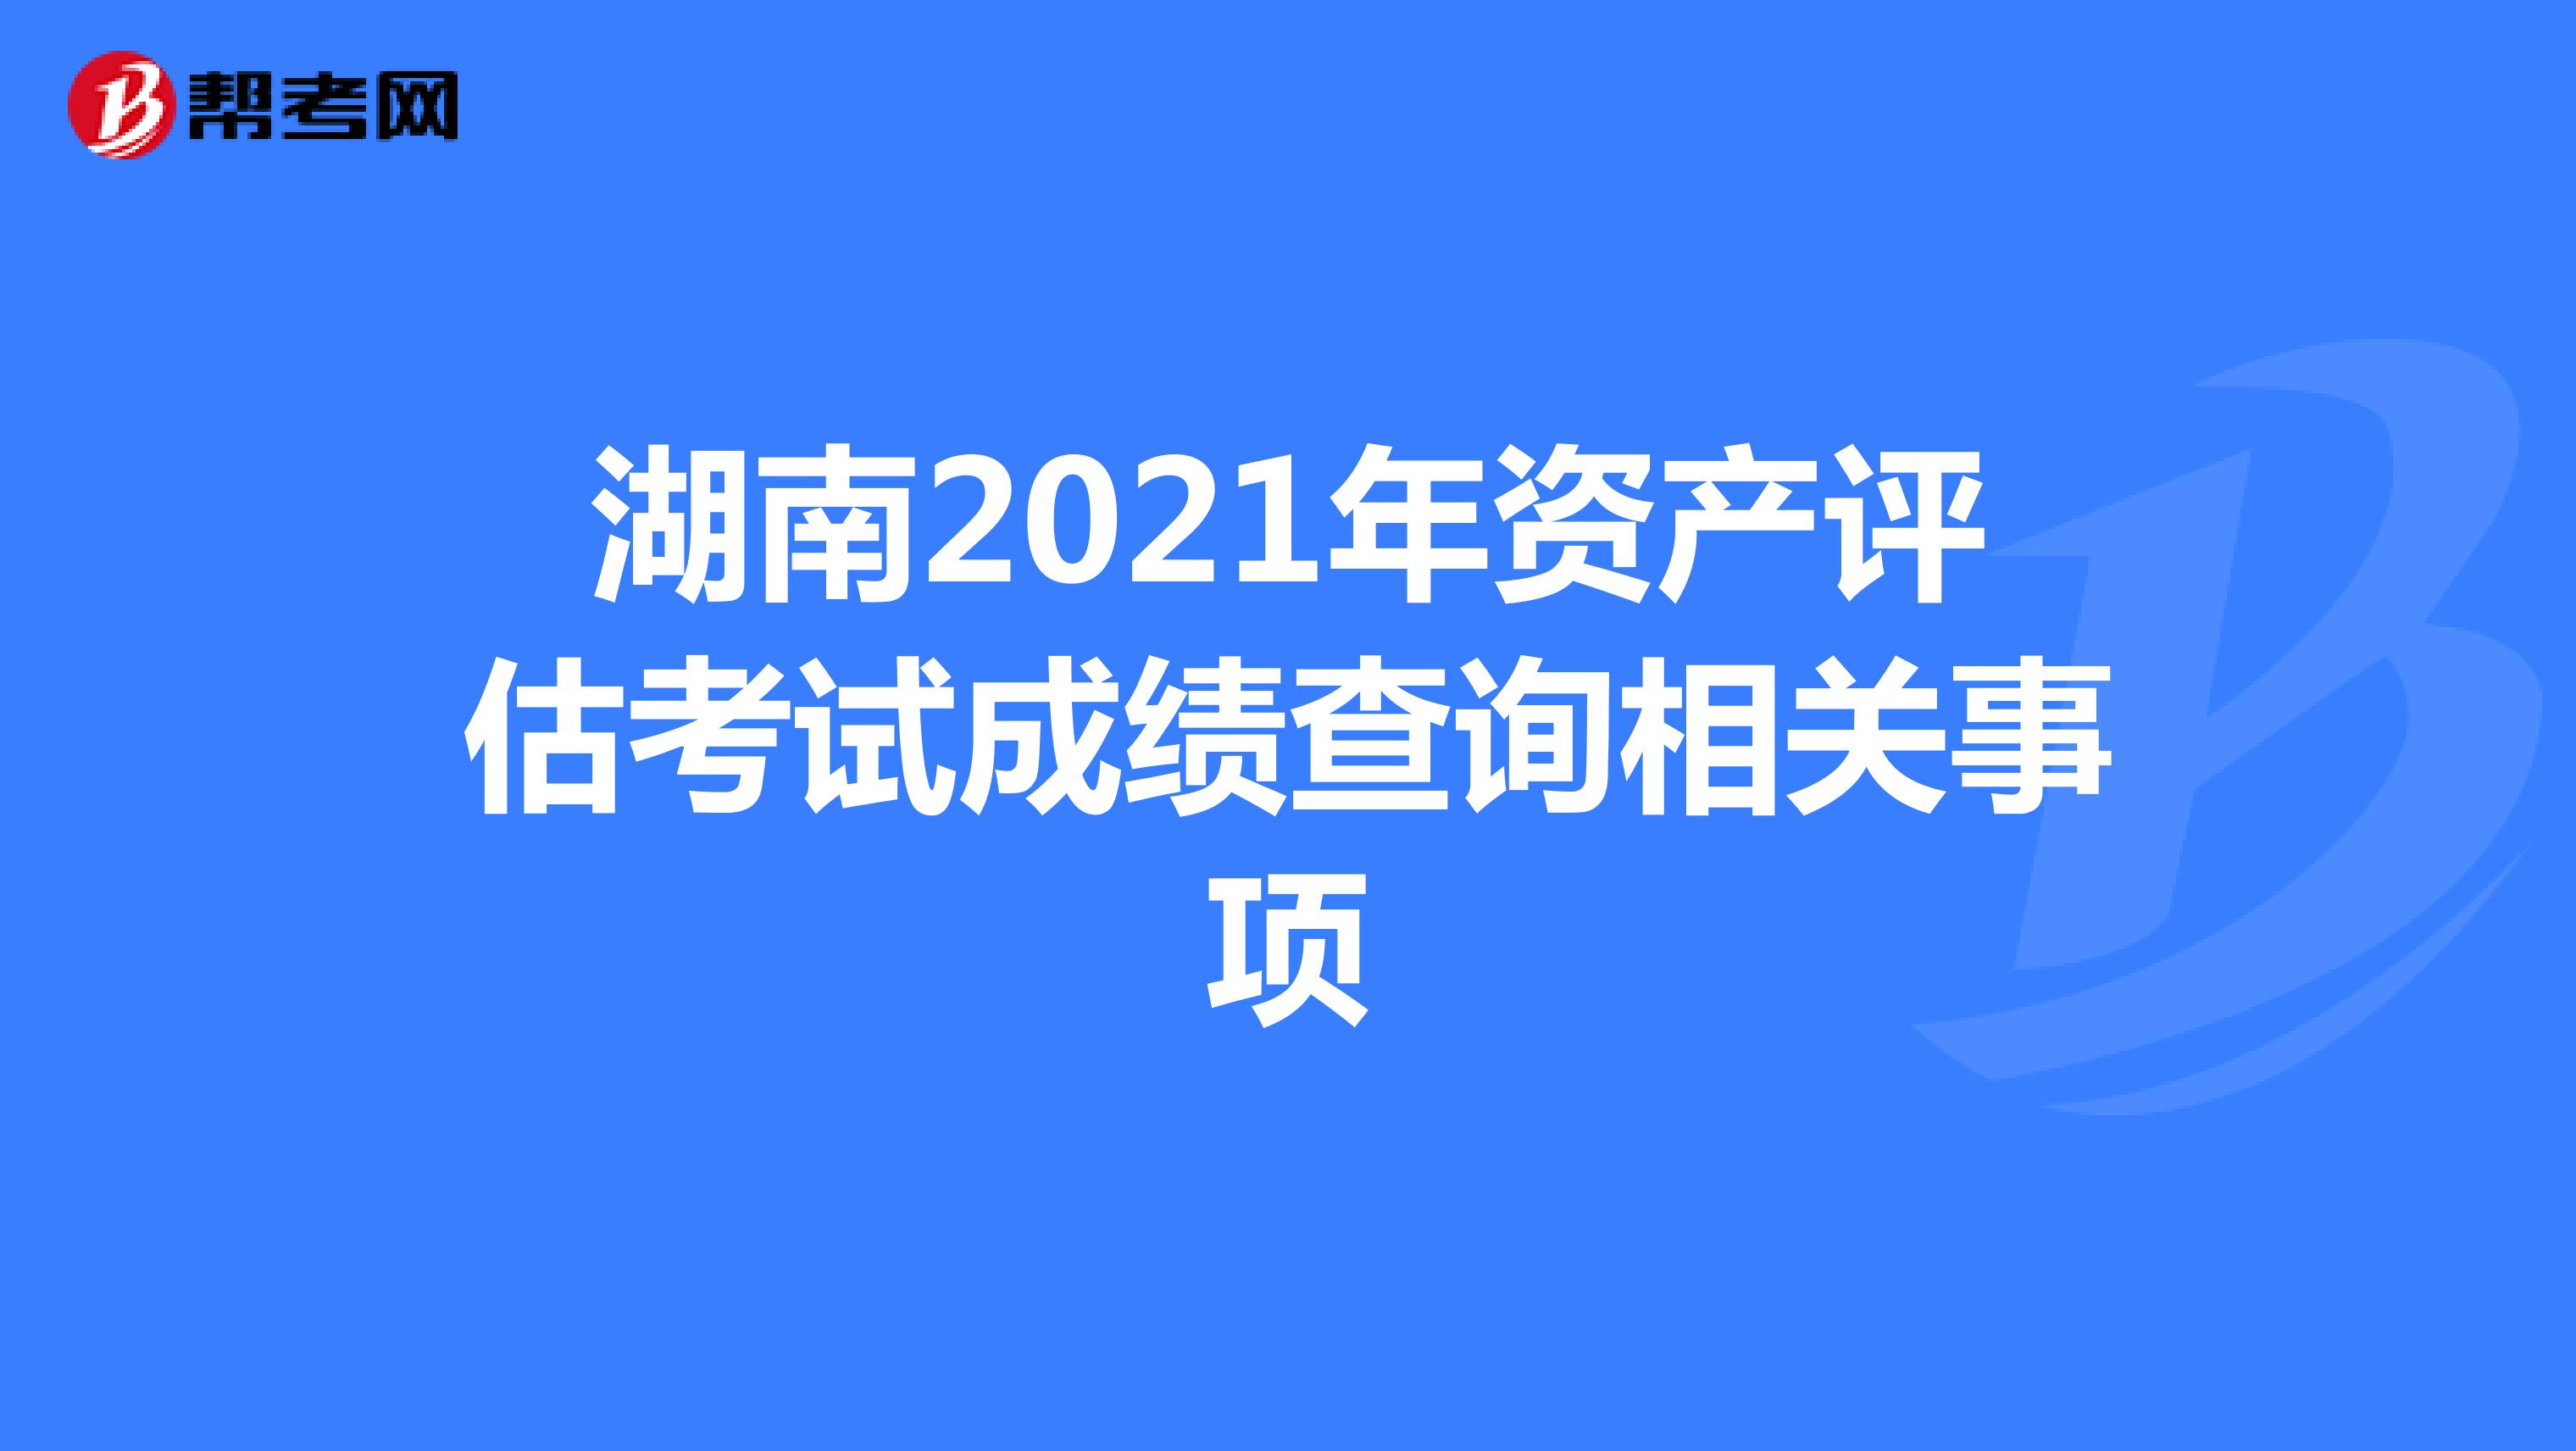 湖南2021年资产评估考试成绩查询相关事项